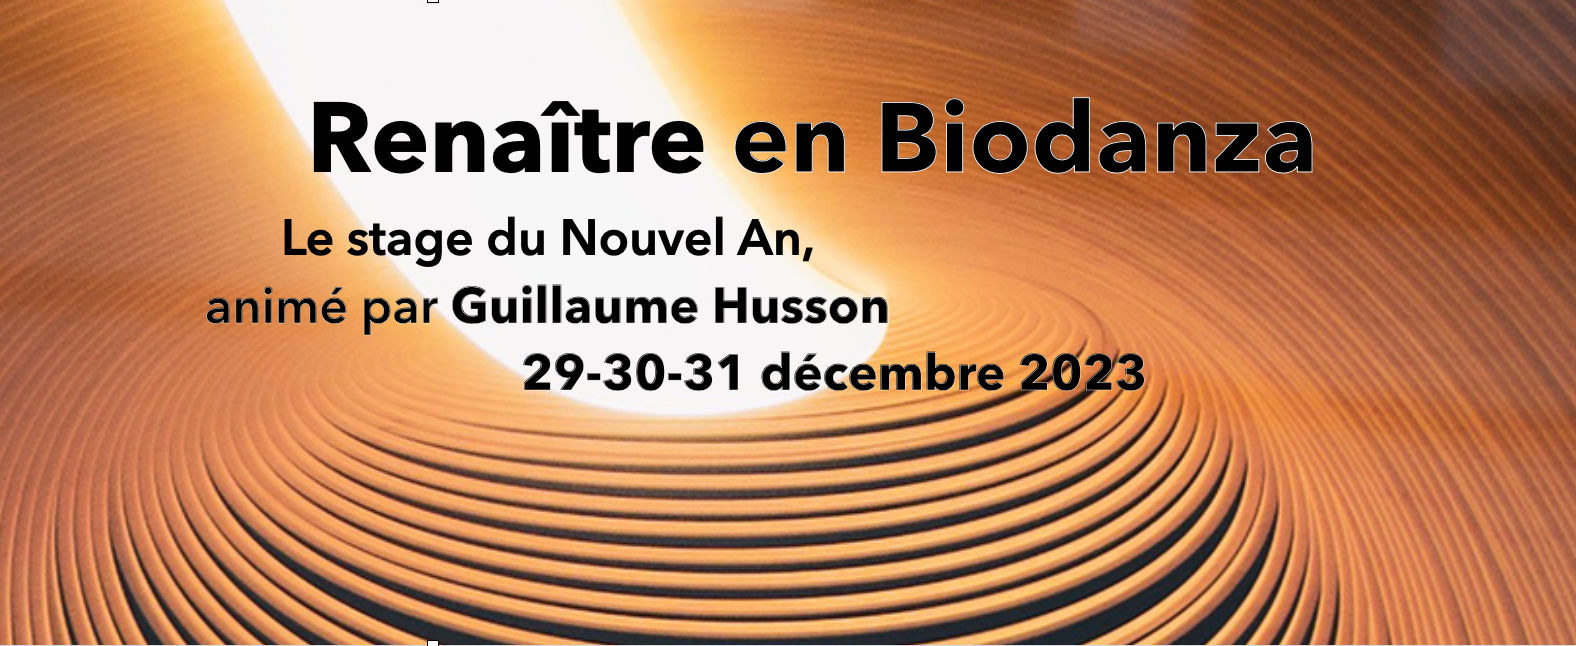 Renaitre en Biodanza avec Guillaume Husson - Stage de Nouvel An